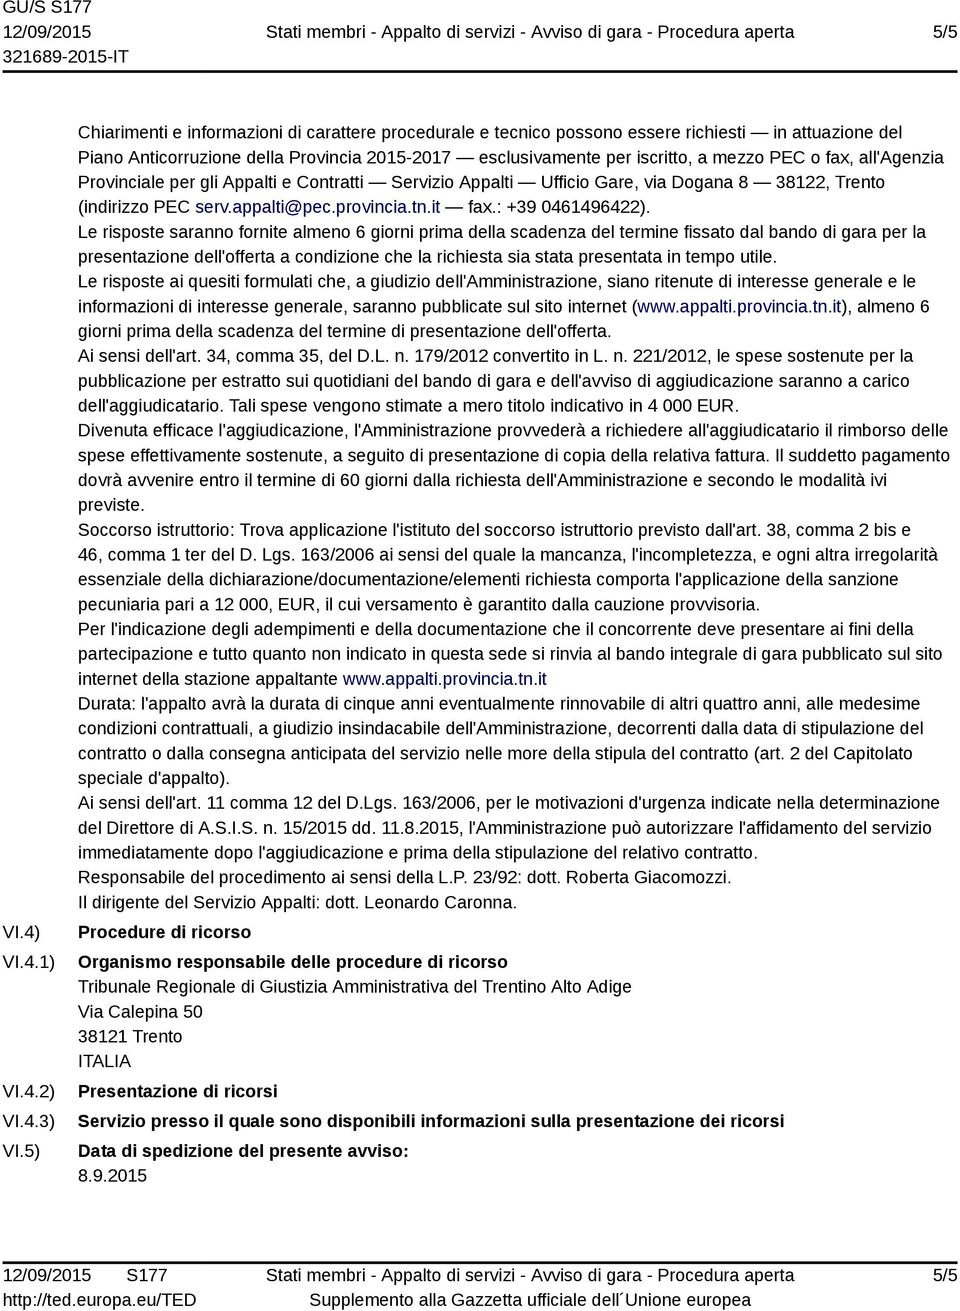 fax, all'agenzia Provinciale per gli Appalti e Contratti Servizio Appalti Ufficio Gare, via Dogana 8 38122, Trento (indirizzo PEC serv.appalti@pec.provincia.tn.it fax.: +39 0461496422).